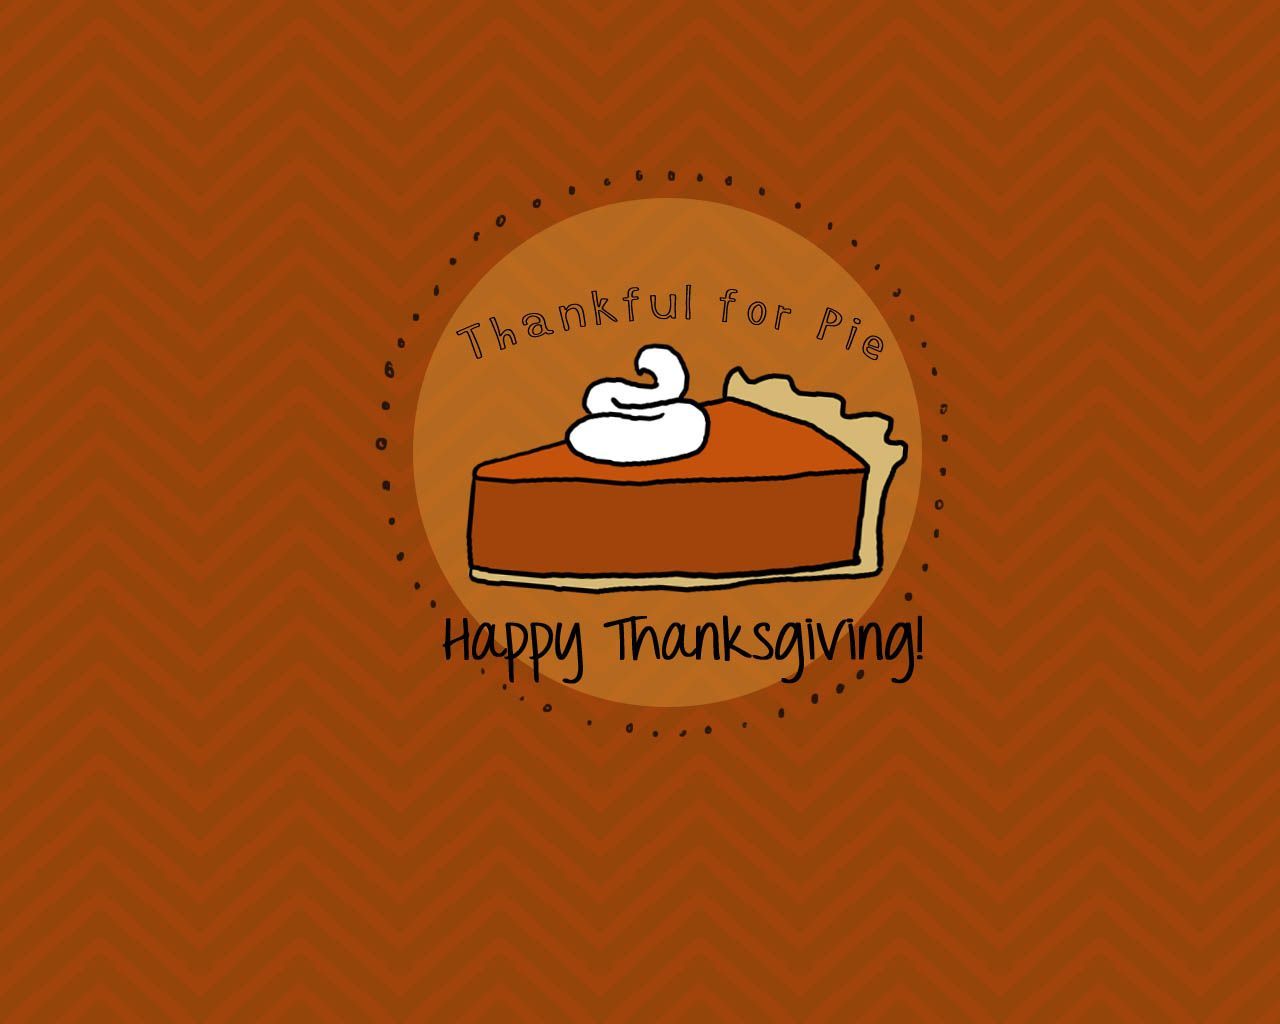 Wallpaper For Thanksgiving